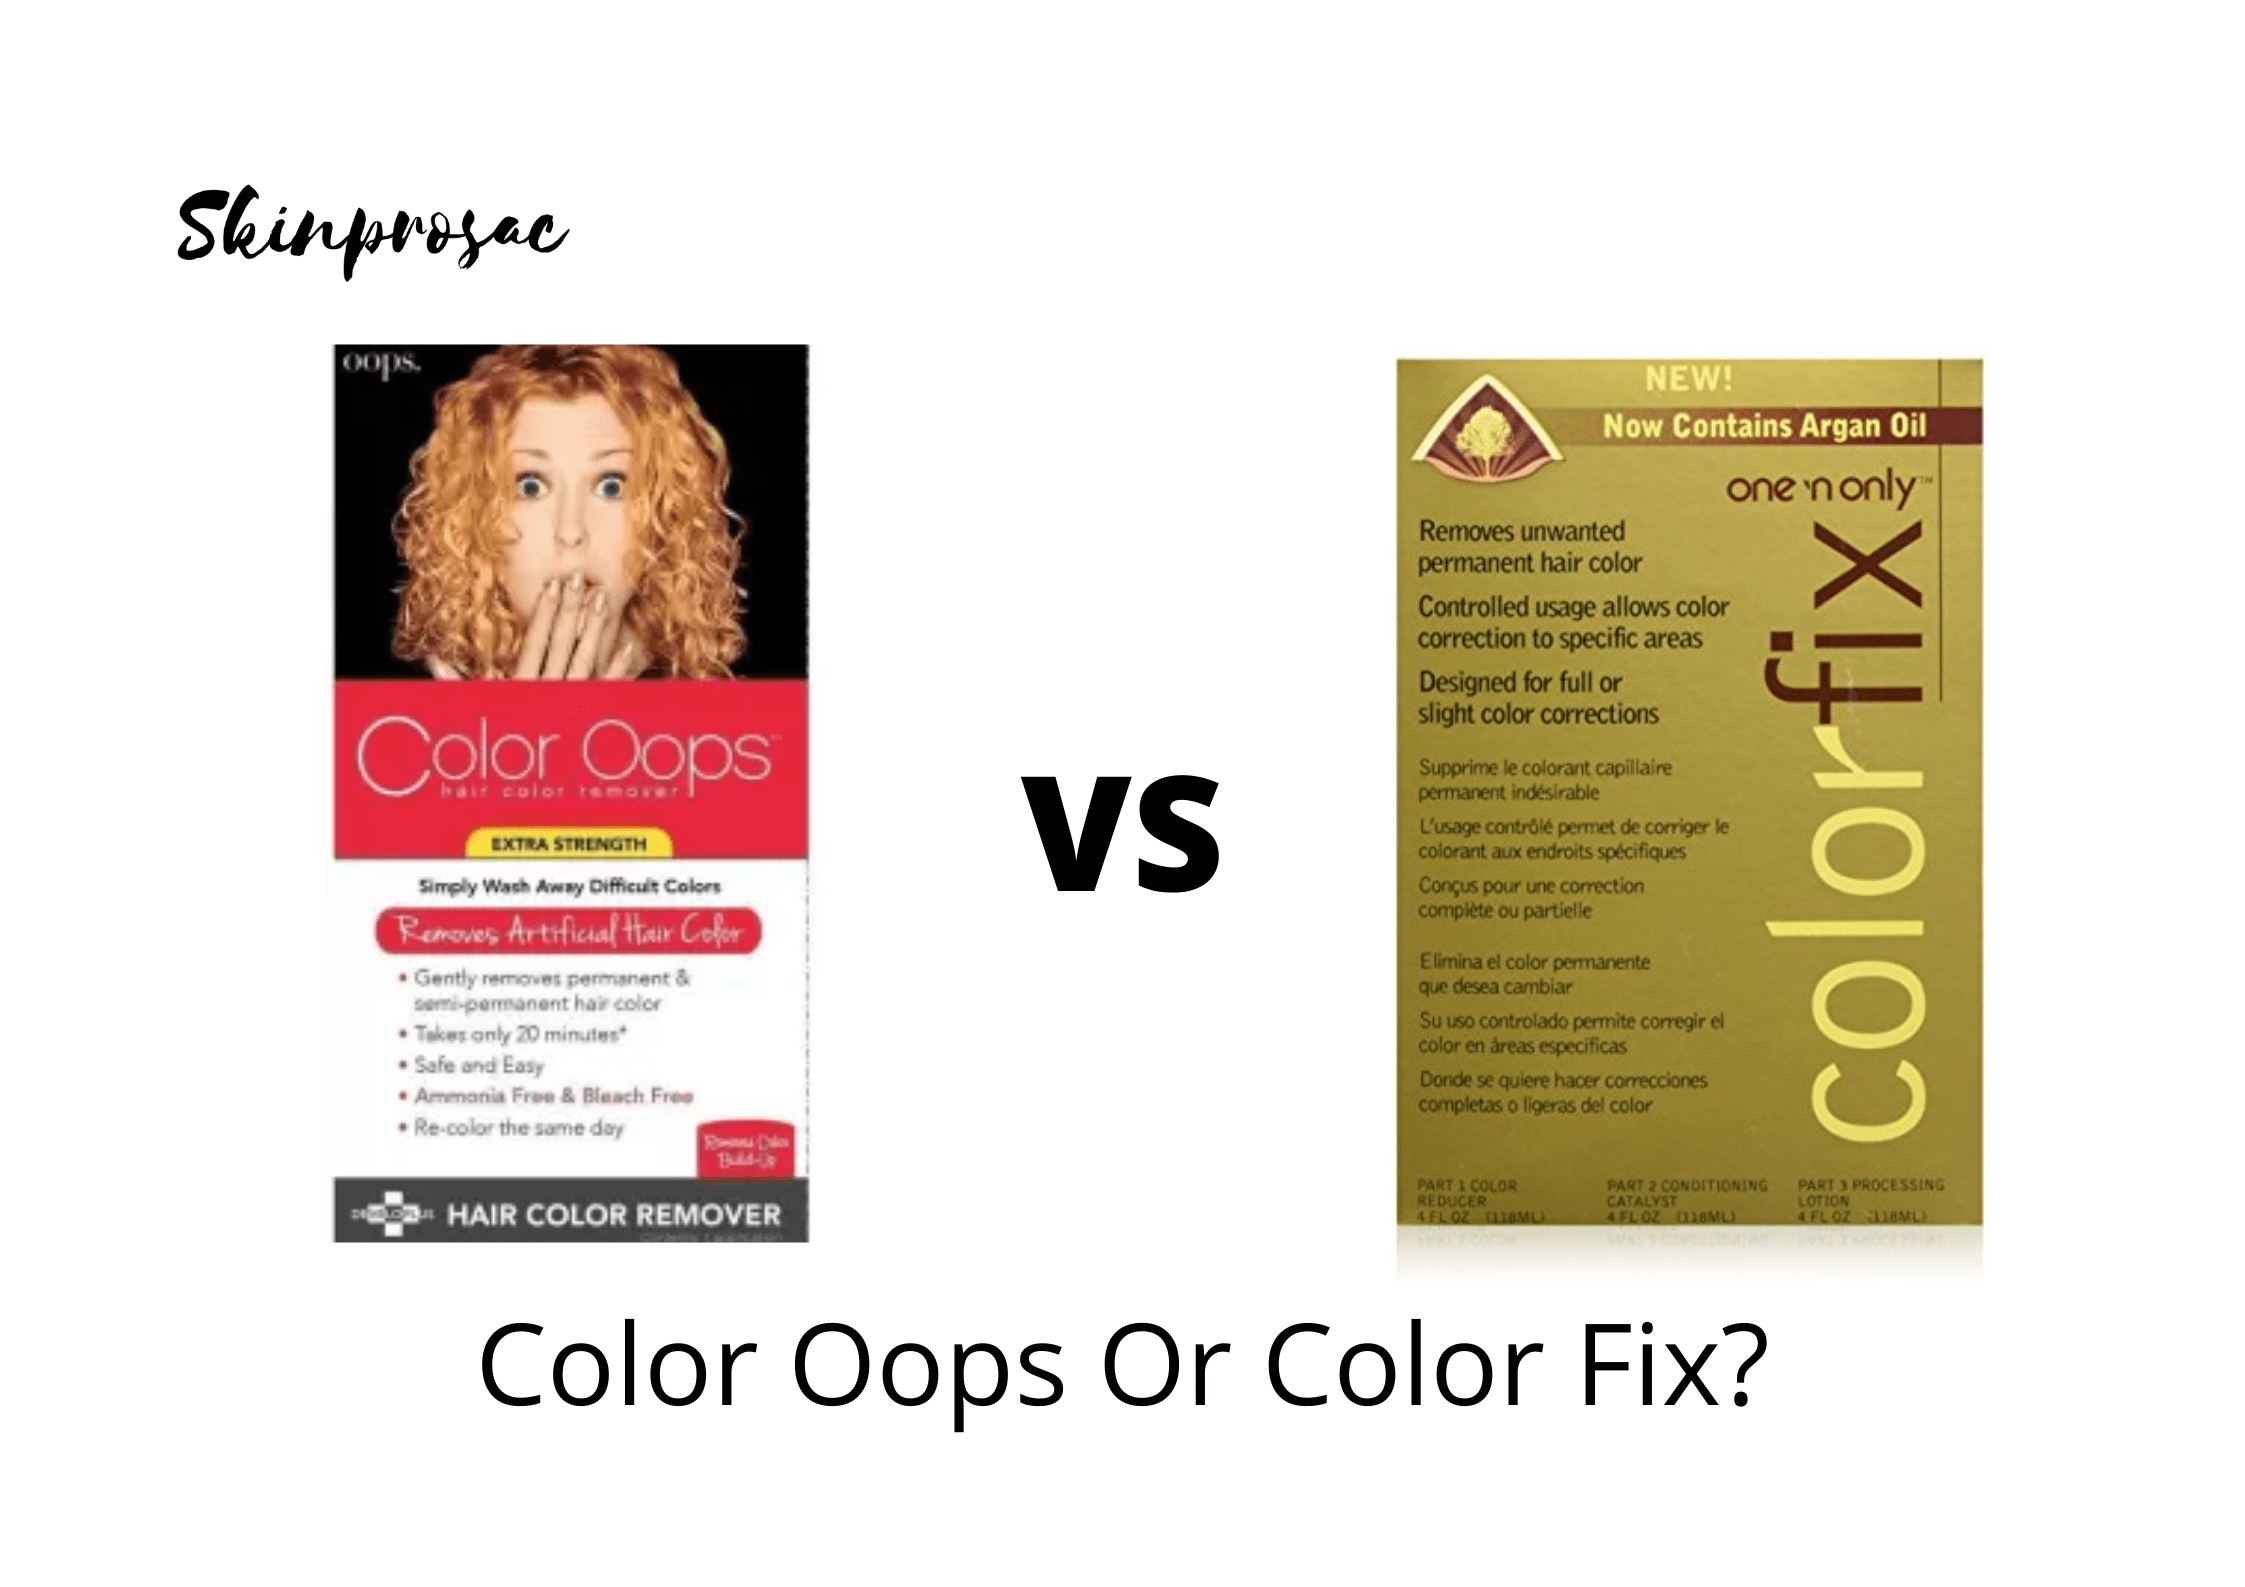 Color Oops VS Color Fix